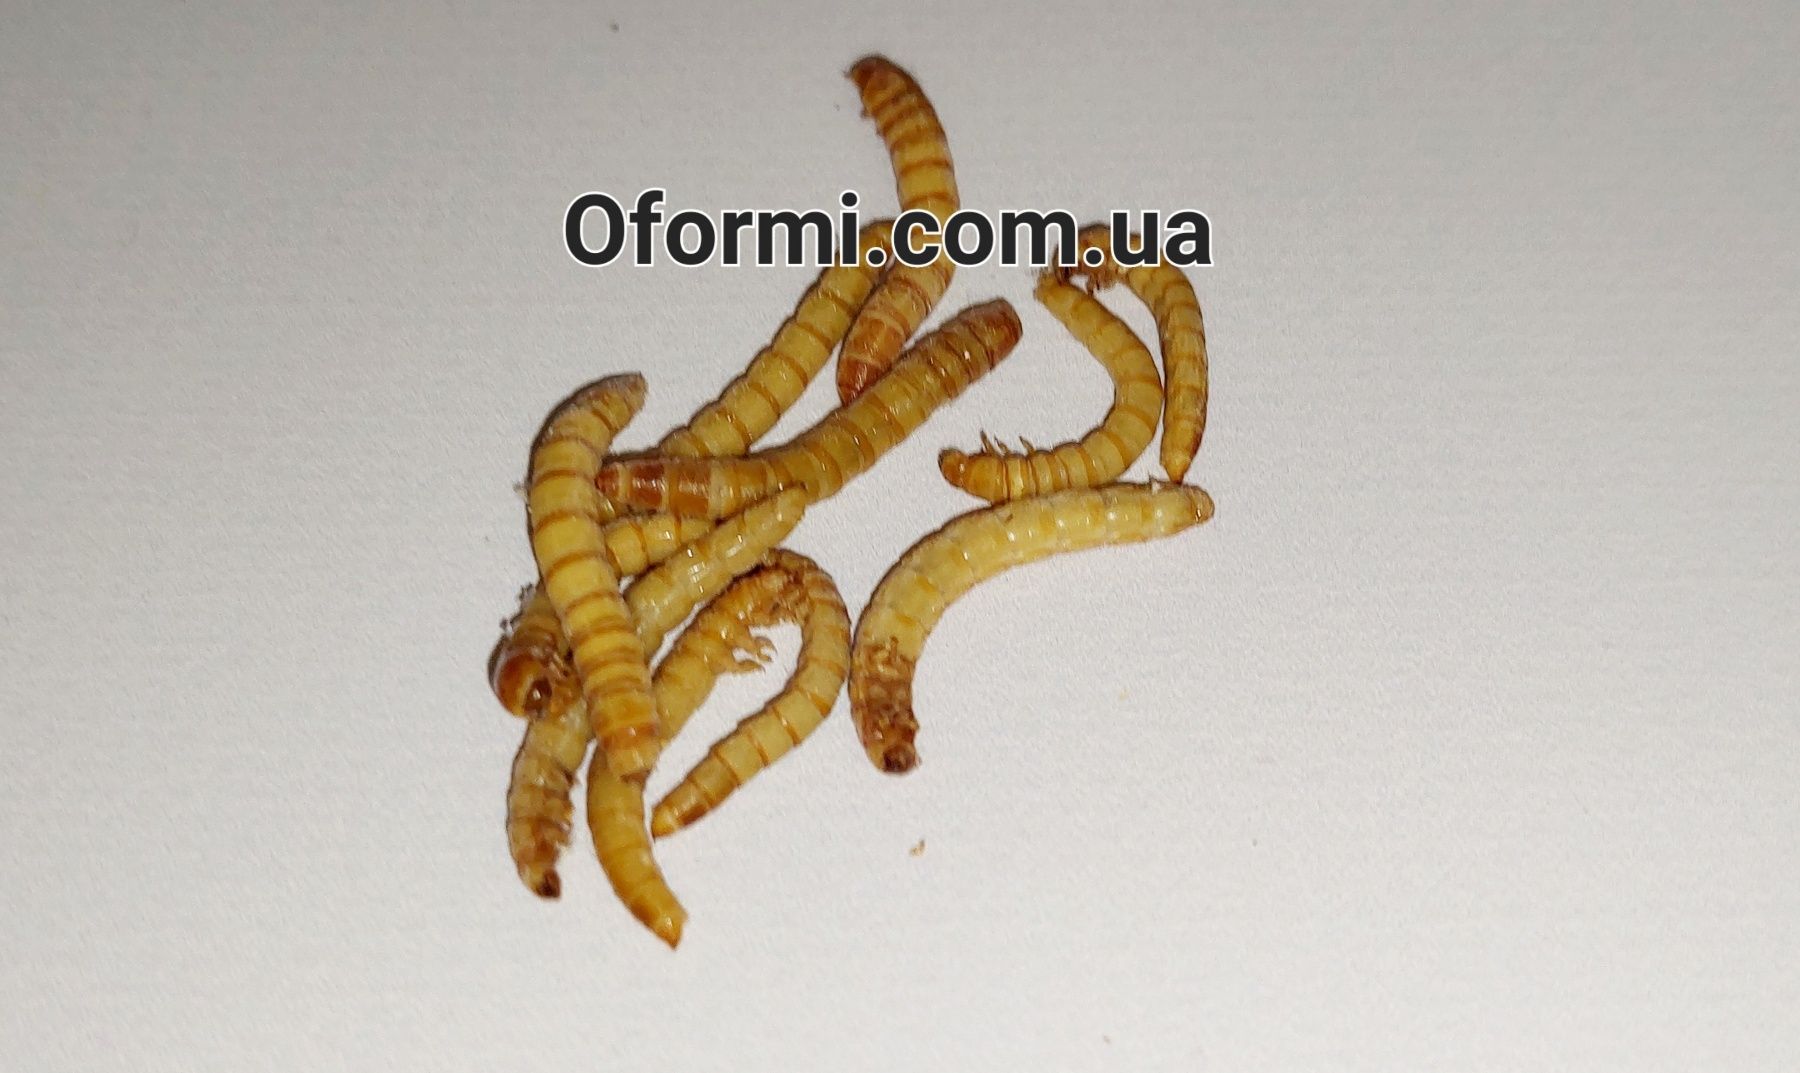 Мучной червь живые личинки, корм для стрижа, и других животных